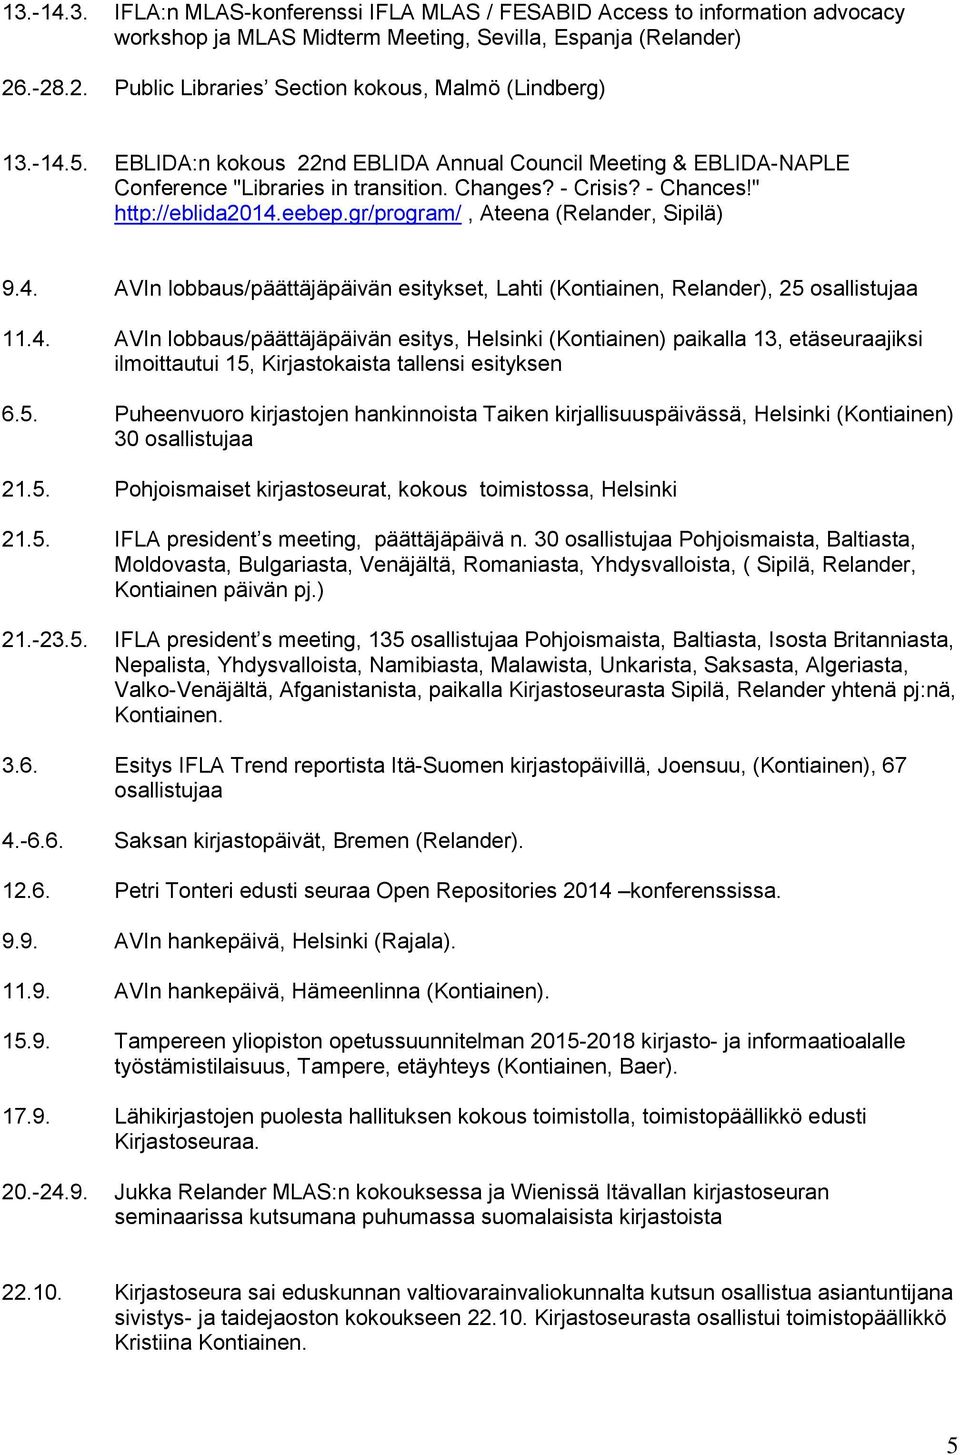 " http://eblida2014.eebep.gr/program/, Ateena (Relander, Sipilä) 9.4. AVIn lobbaus/päättäjäpäivän esitykset, Lahti (Kontiainen, Relander), 25 osallistujaa 11.4. AVIn lobbaus/päättäjäpäivän esitys, Helsinki (Kontiainen) paikalla 13, etäseuraajiksi ilmoittautui 15, Kirjastokaista tallensi esityksen 6.